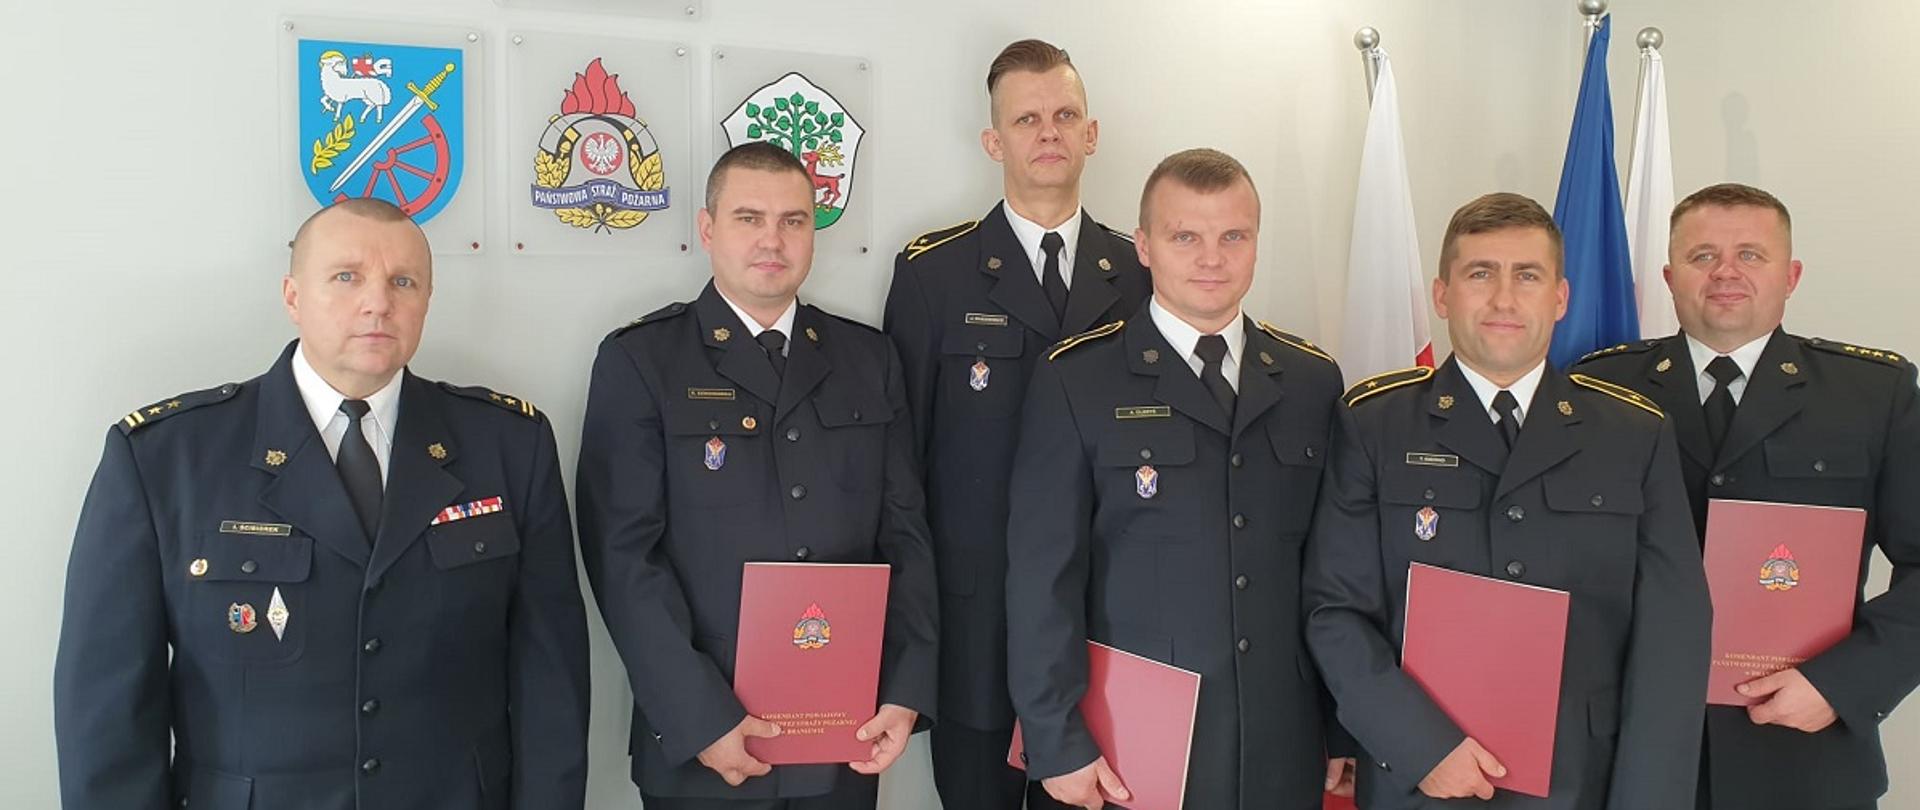 Na zdjęciu sześciu strażaków w gabinecie komendanta w mundurach wyjściowych. W rękach trzymają czerwone teczki.